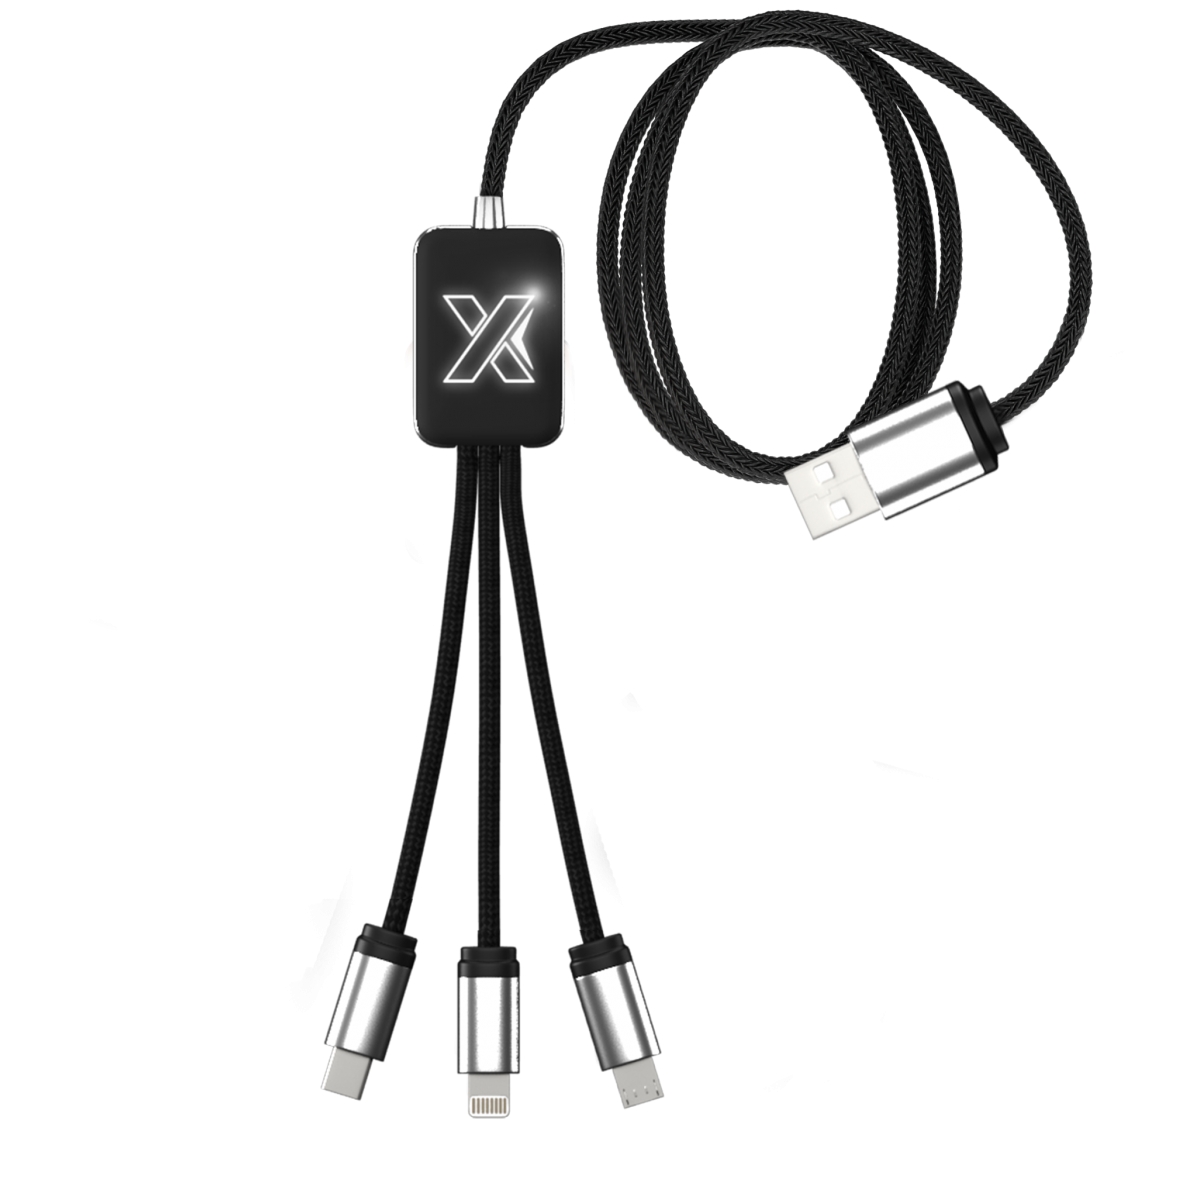 C17 - Câble éco easy to use